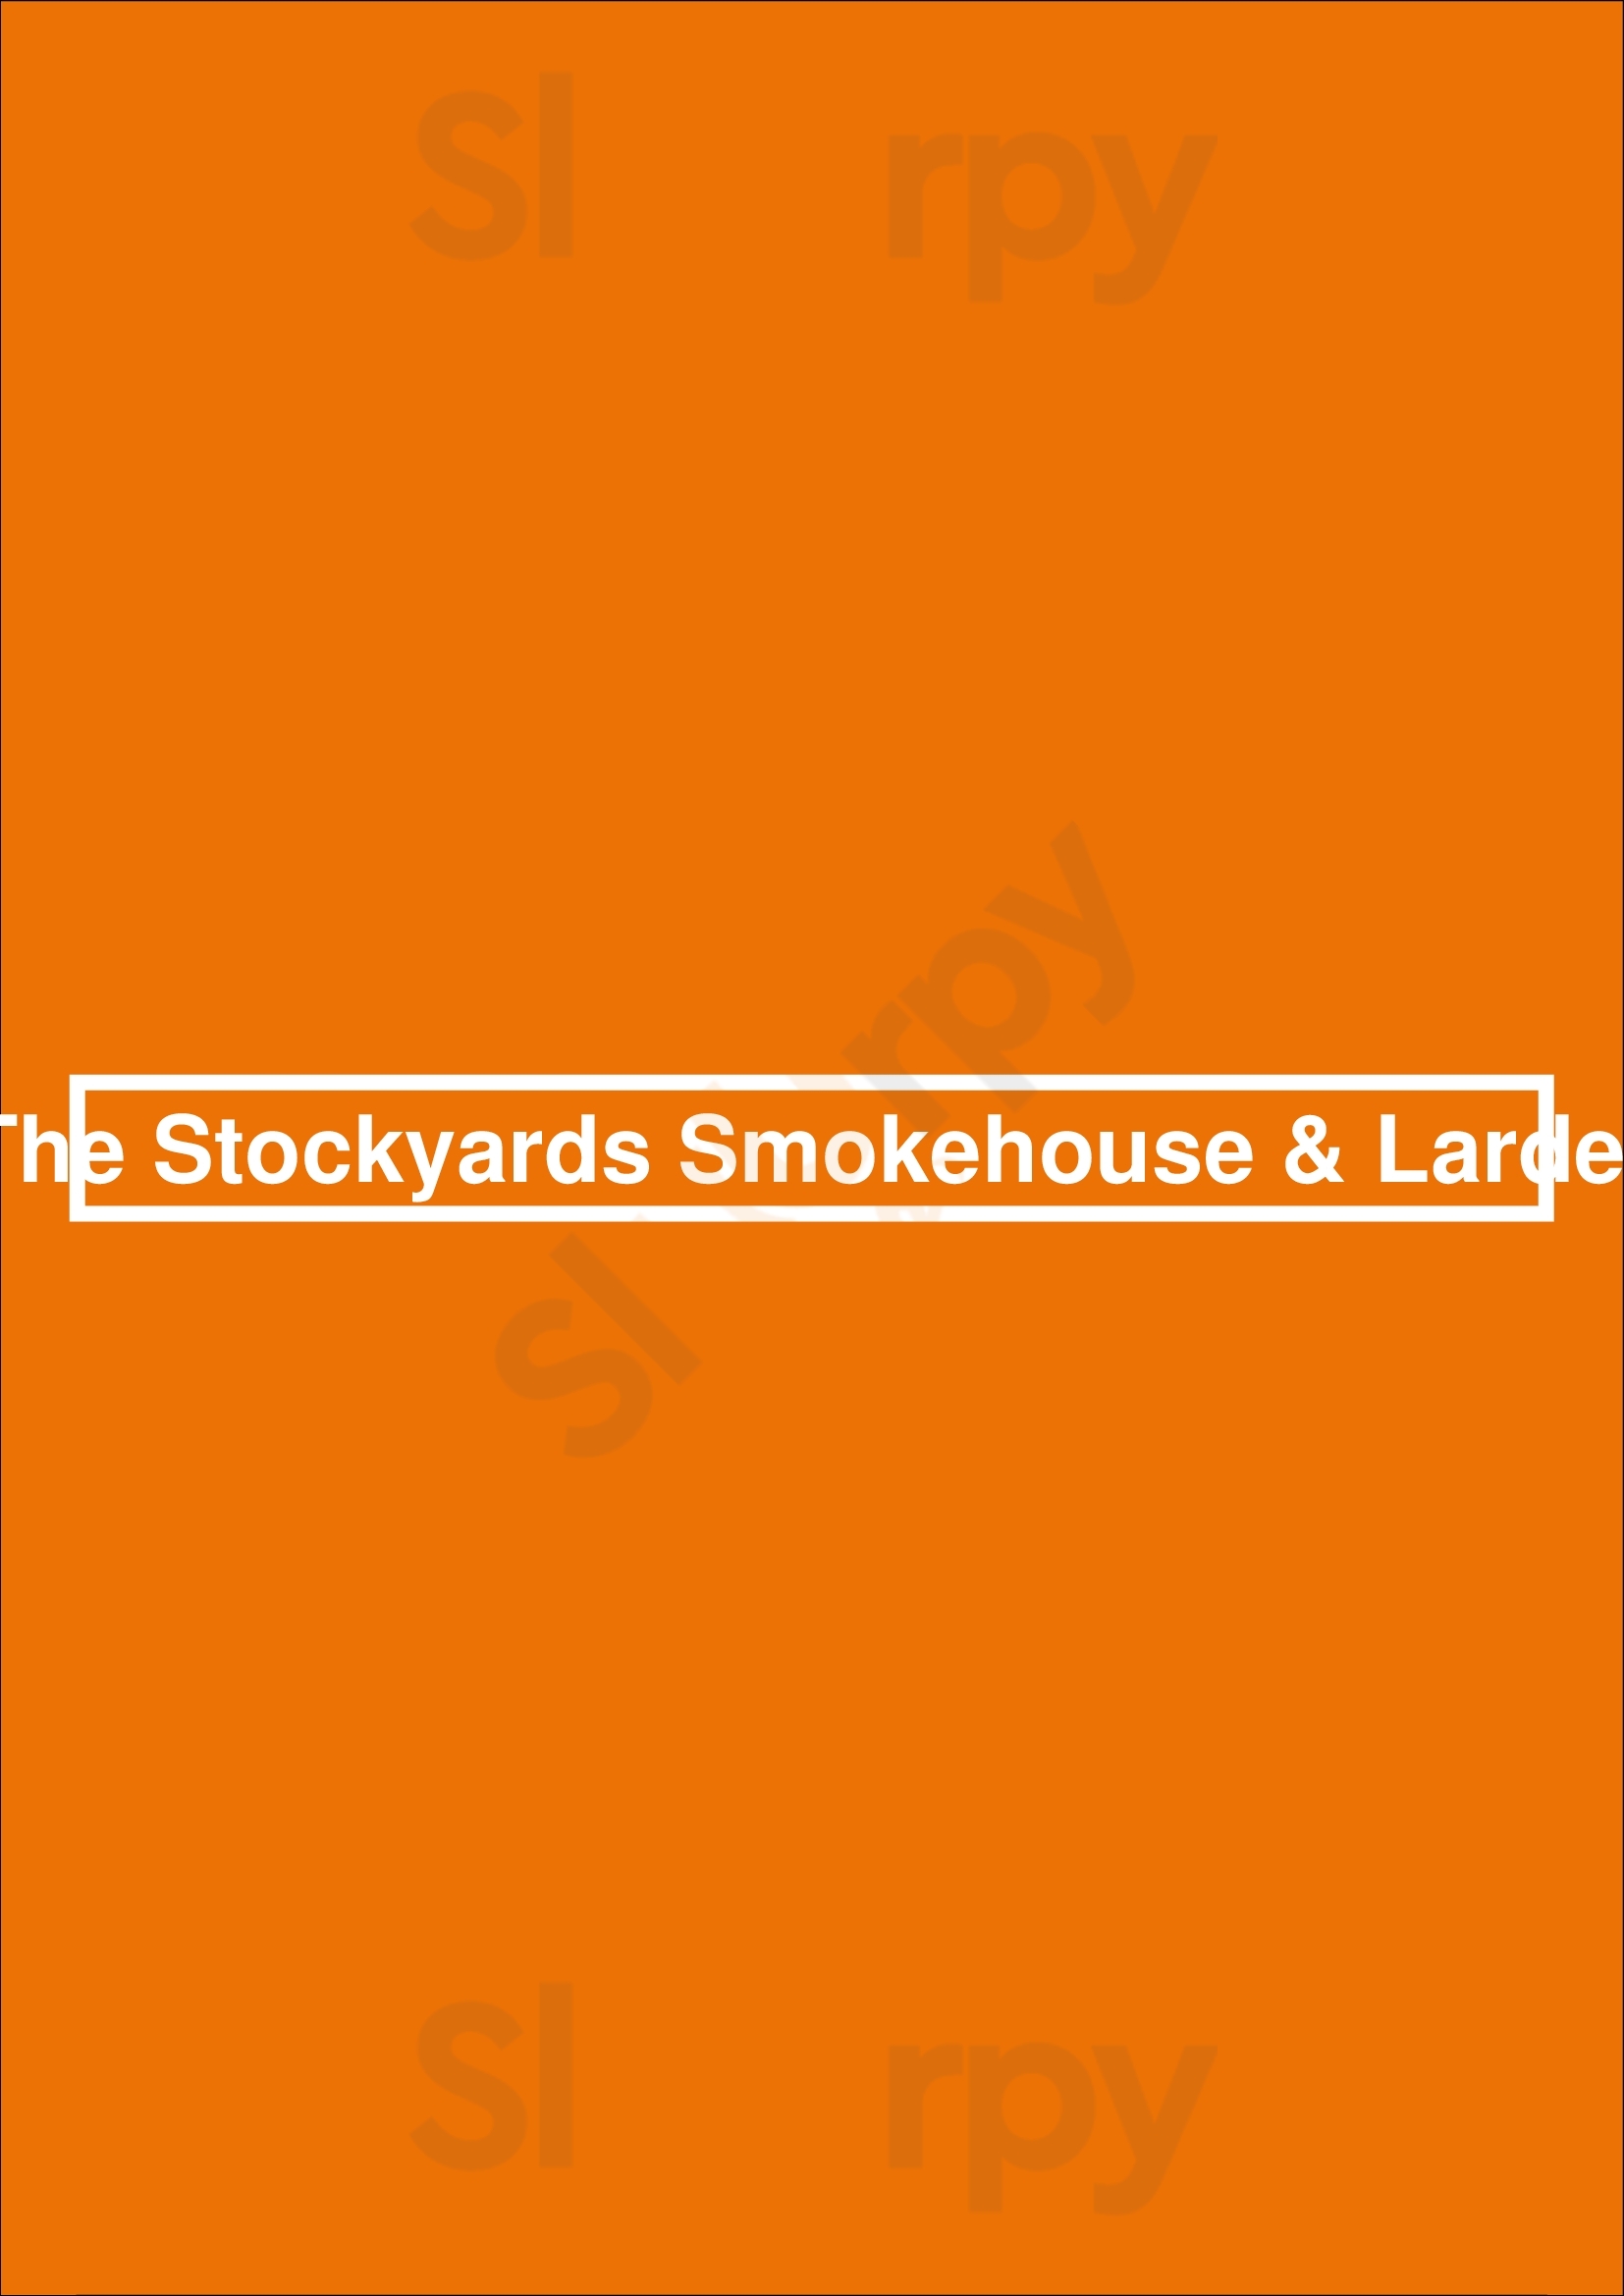 The Stockyards Smokehouse & Larder Toronto Menu - 1